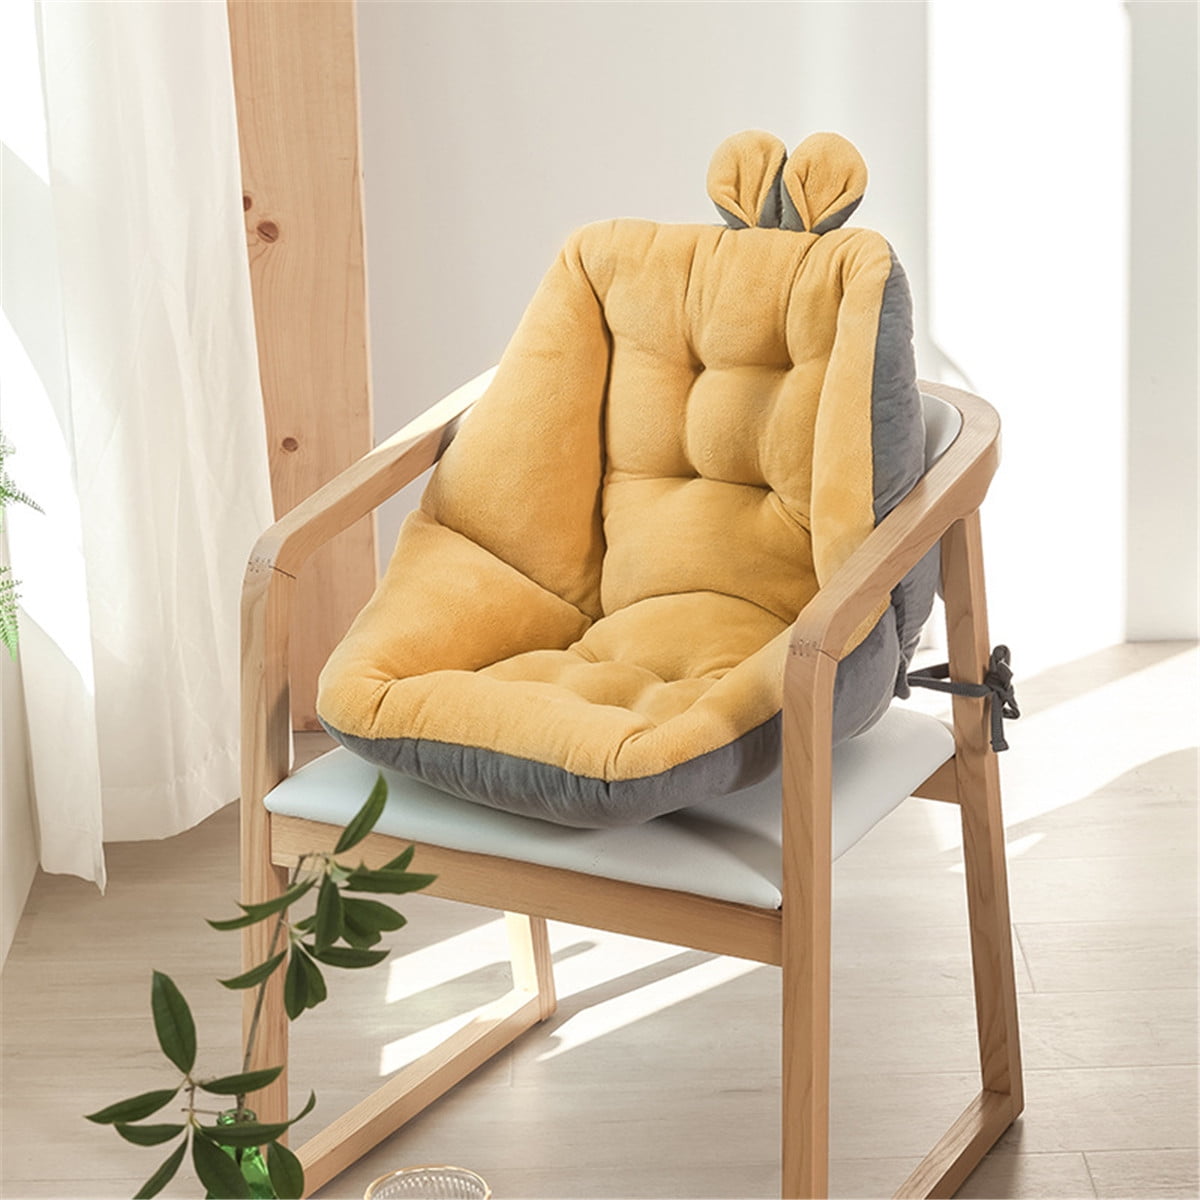 Gymax Adjustable 6-Position Floor Chair Folding Lazy Man Sofa 